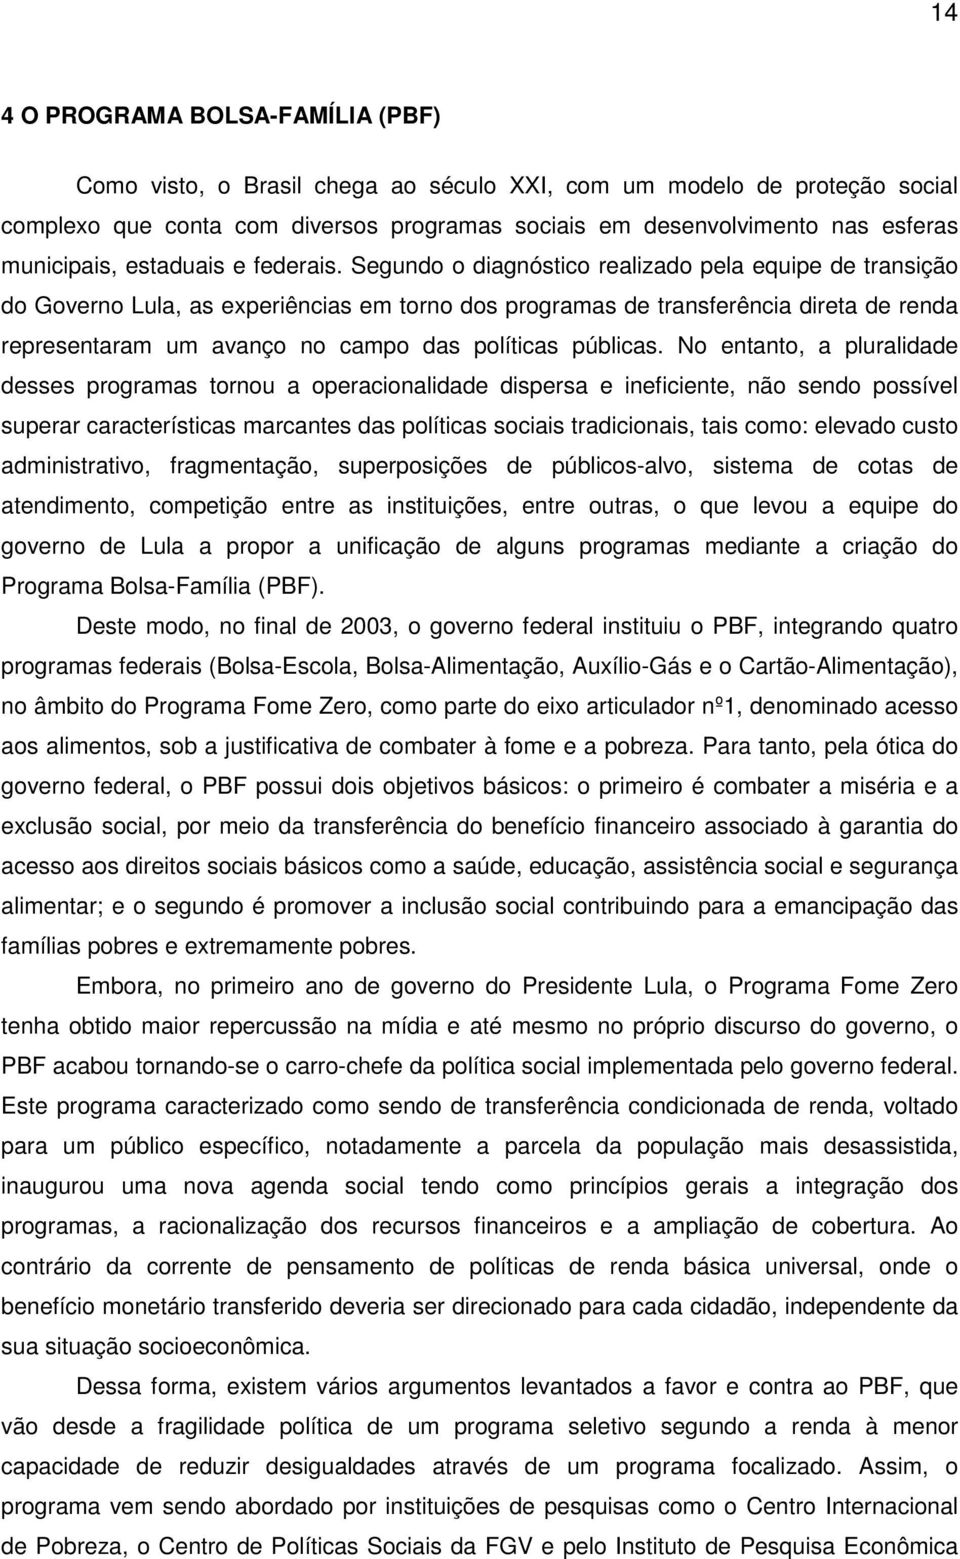 Segundo o diagnóstico realizado pela equipe de transição do Governo Lula, as experiências em torno dos programas de transferência direta de renda representaram um avanço no campo das políticas